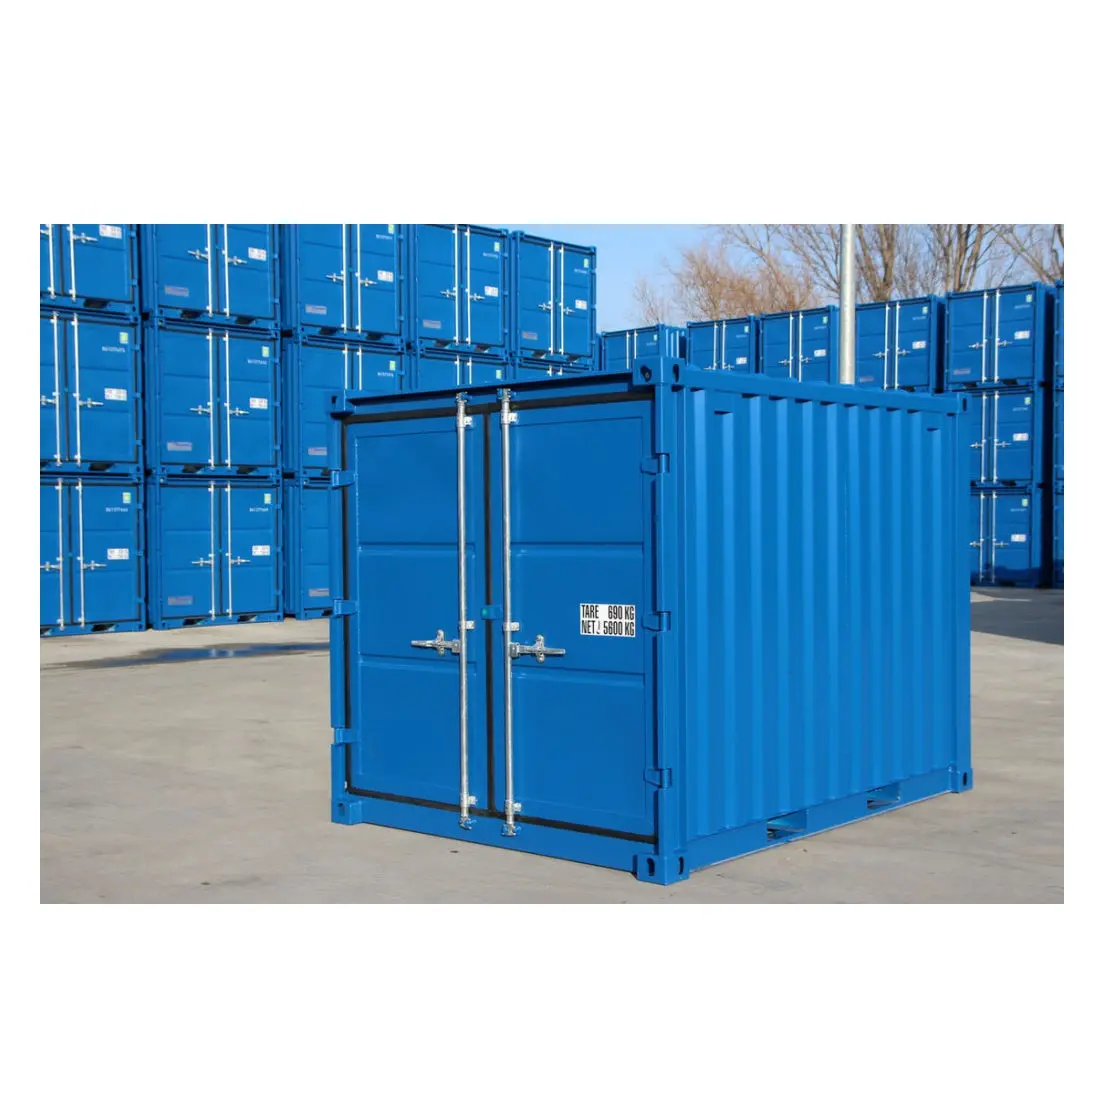 Offre Spéciale 20 Ft 40 Hq Container Service de fret professionnel et fiable Agent de transport de fret maritime de Chine